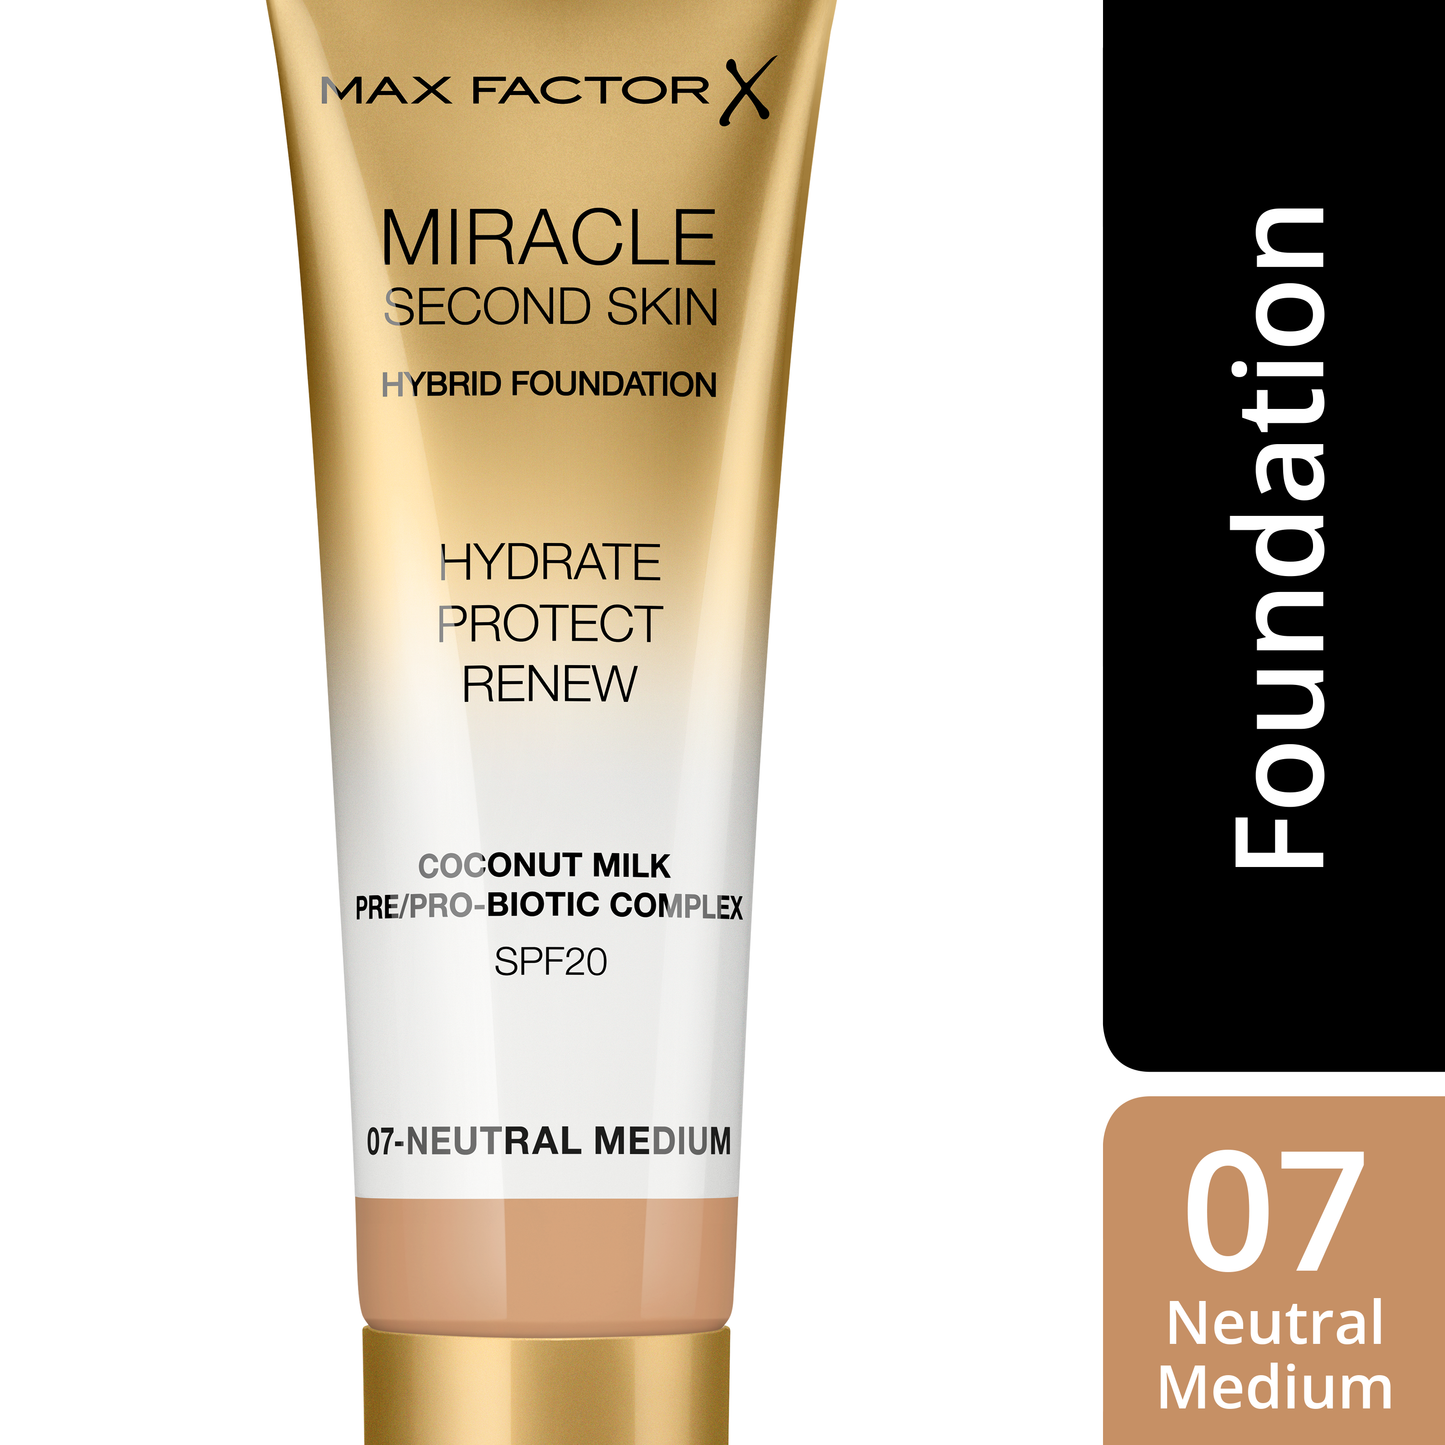 Max Factor Miracle Second Skin Fondotinta dal Finish Naturale, con Latte di Cocco Idratante e SPF 20, 07 Neutral Medium